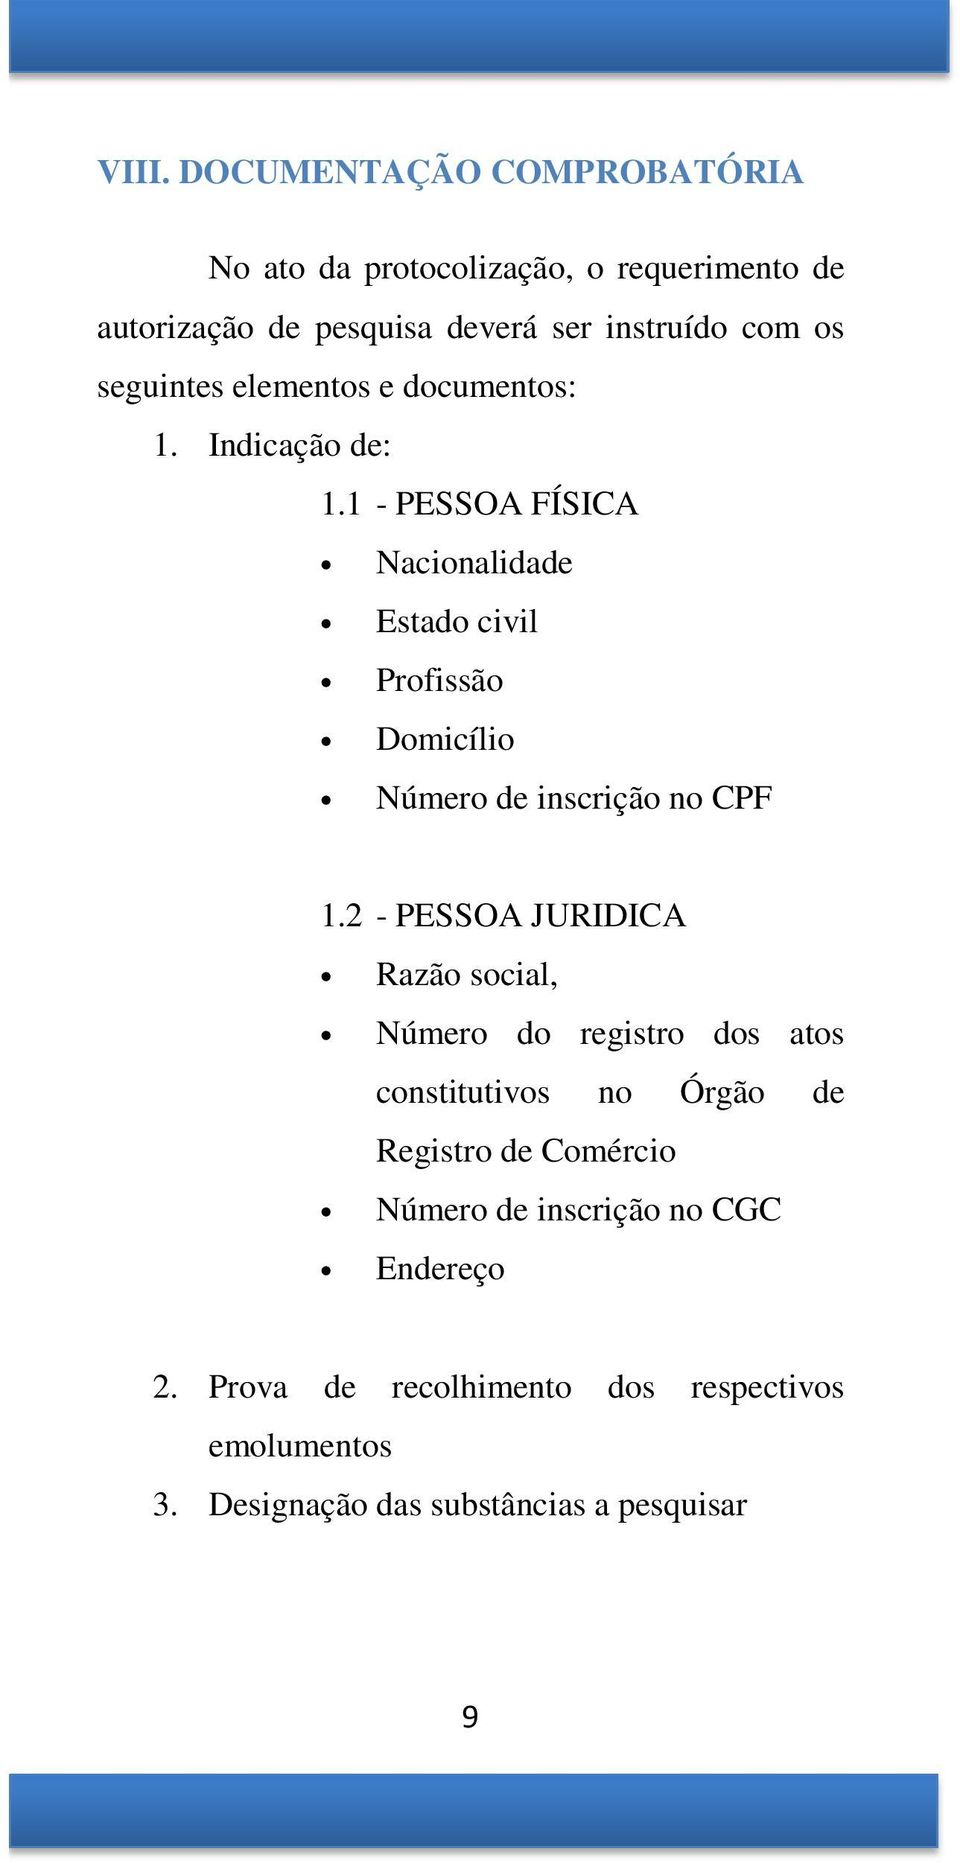 1 - PESSOA FÍSICA Nacionalidade Estado civil Profissão Domicílio Número de inscrição no CPF 1.